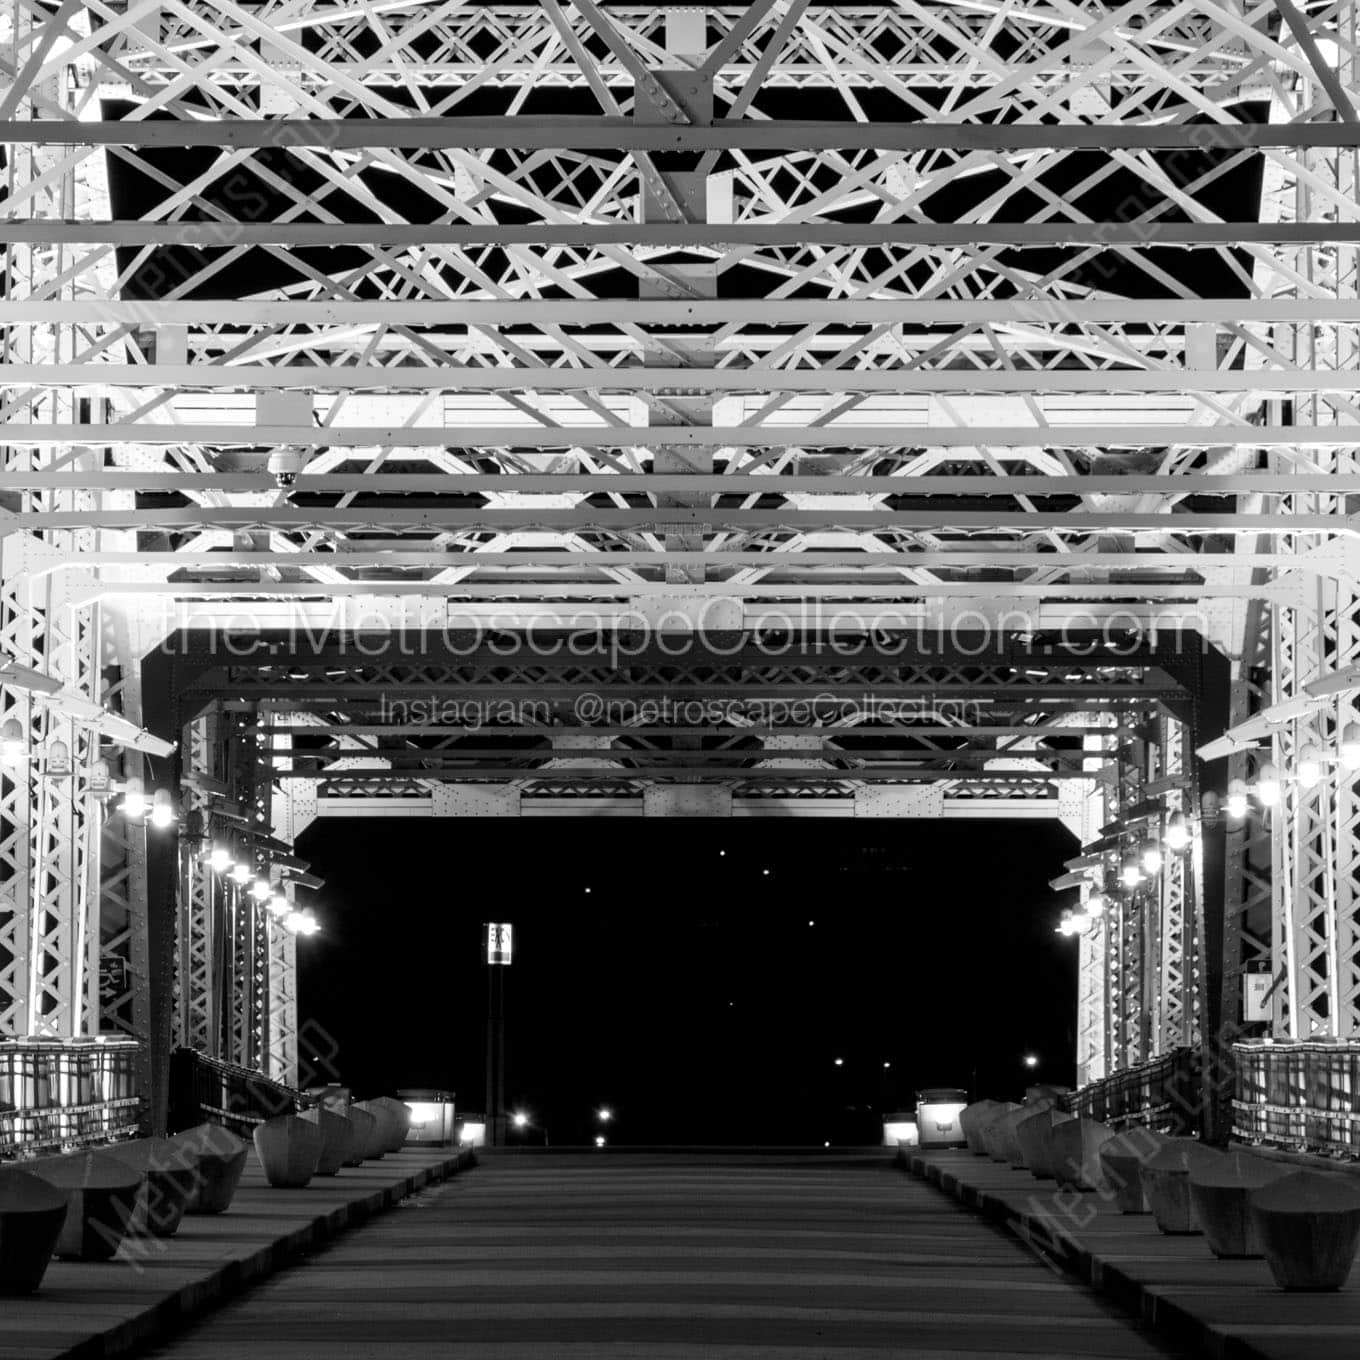 seigenthaler pedeatrian bridge at night Black & White Office Art